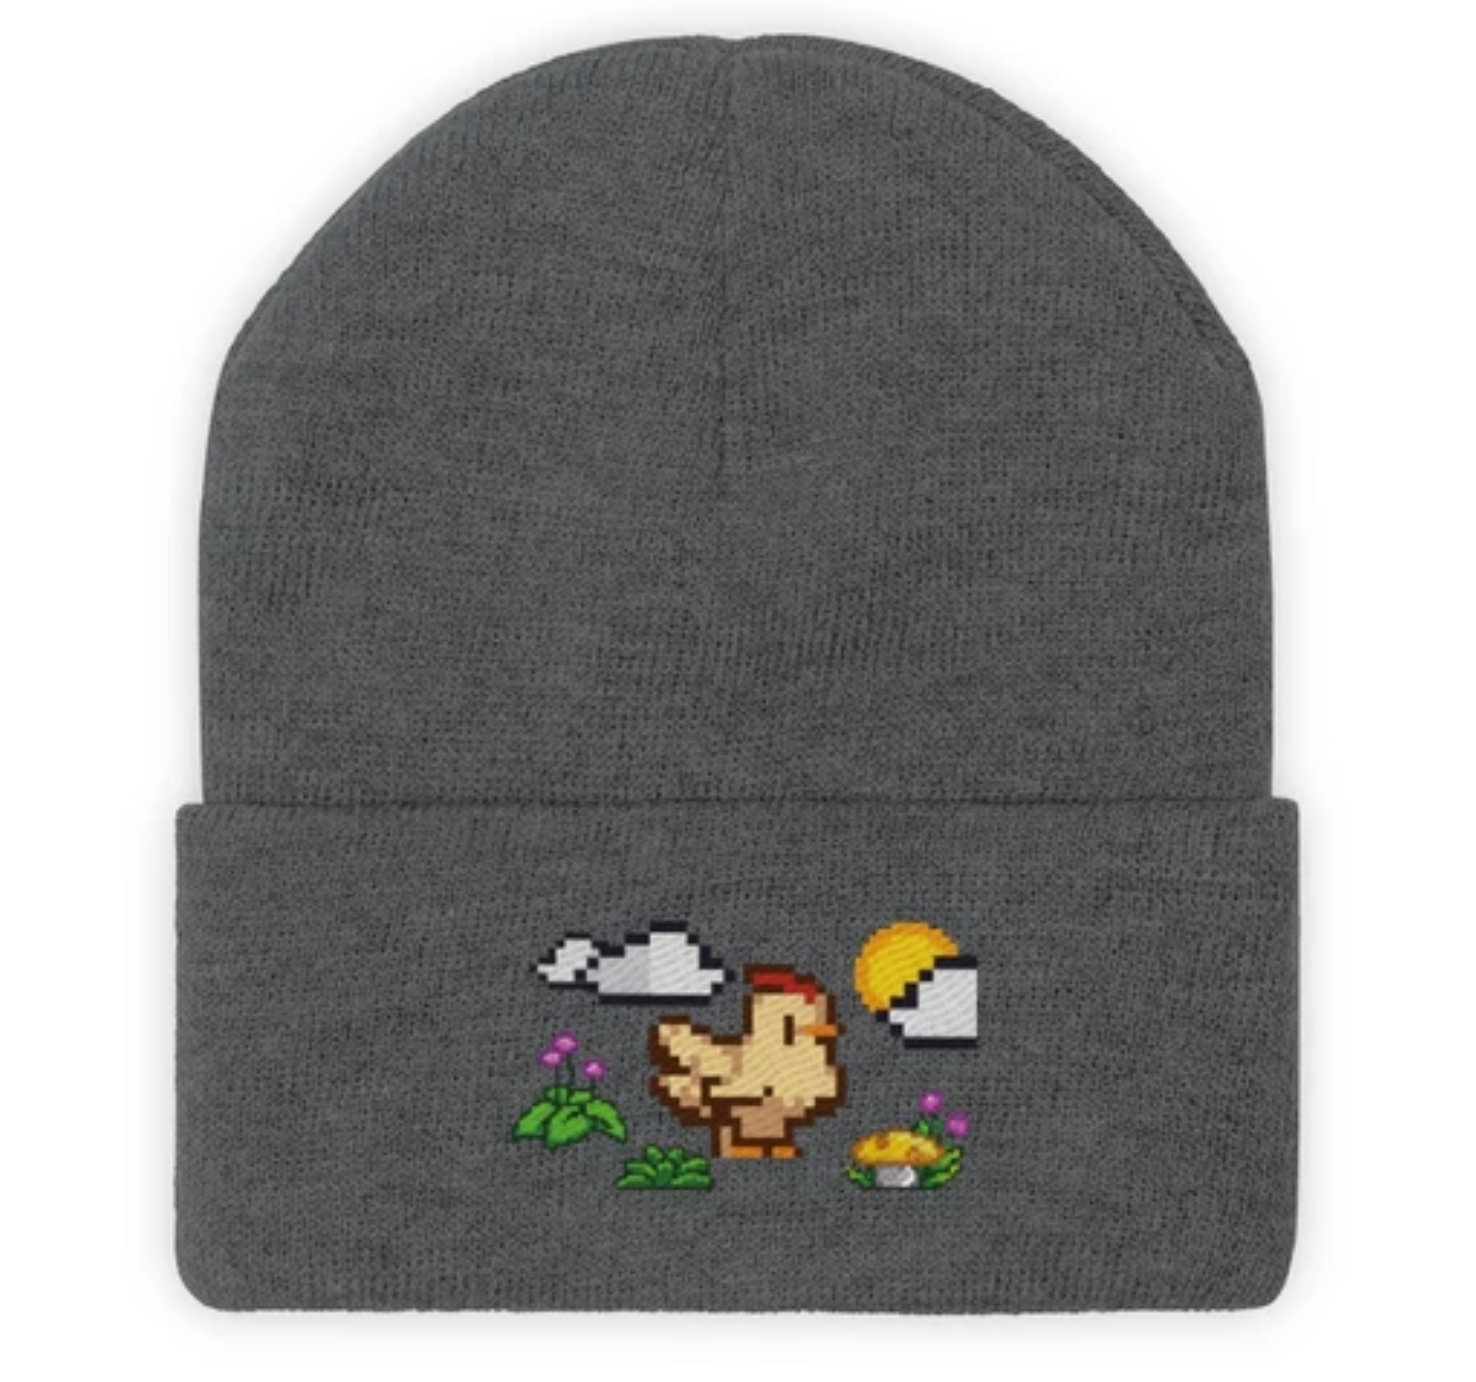 灰色毛线帽子上有小鸡图案